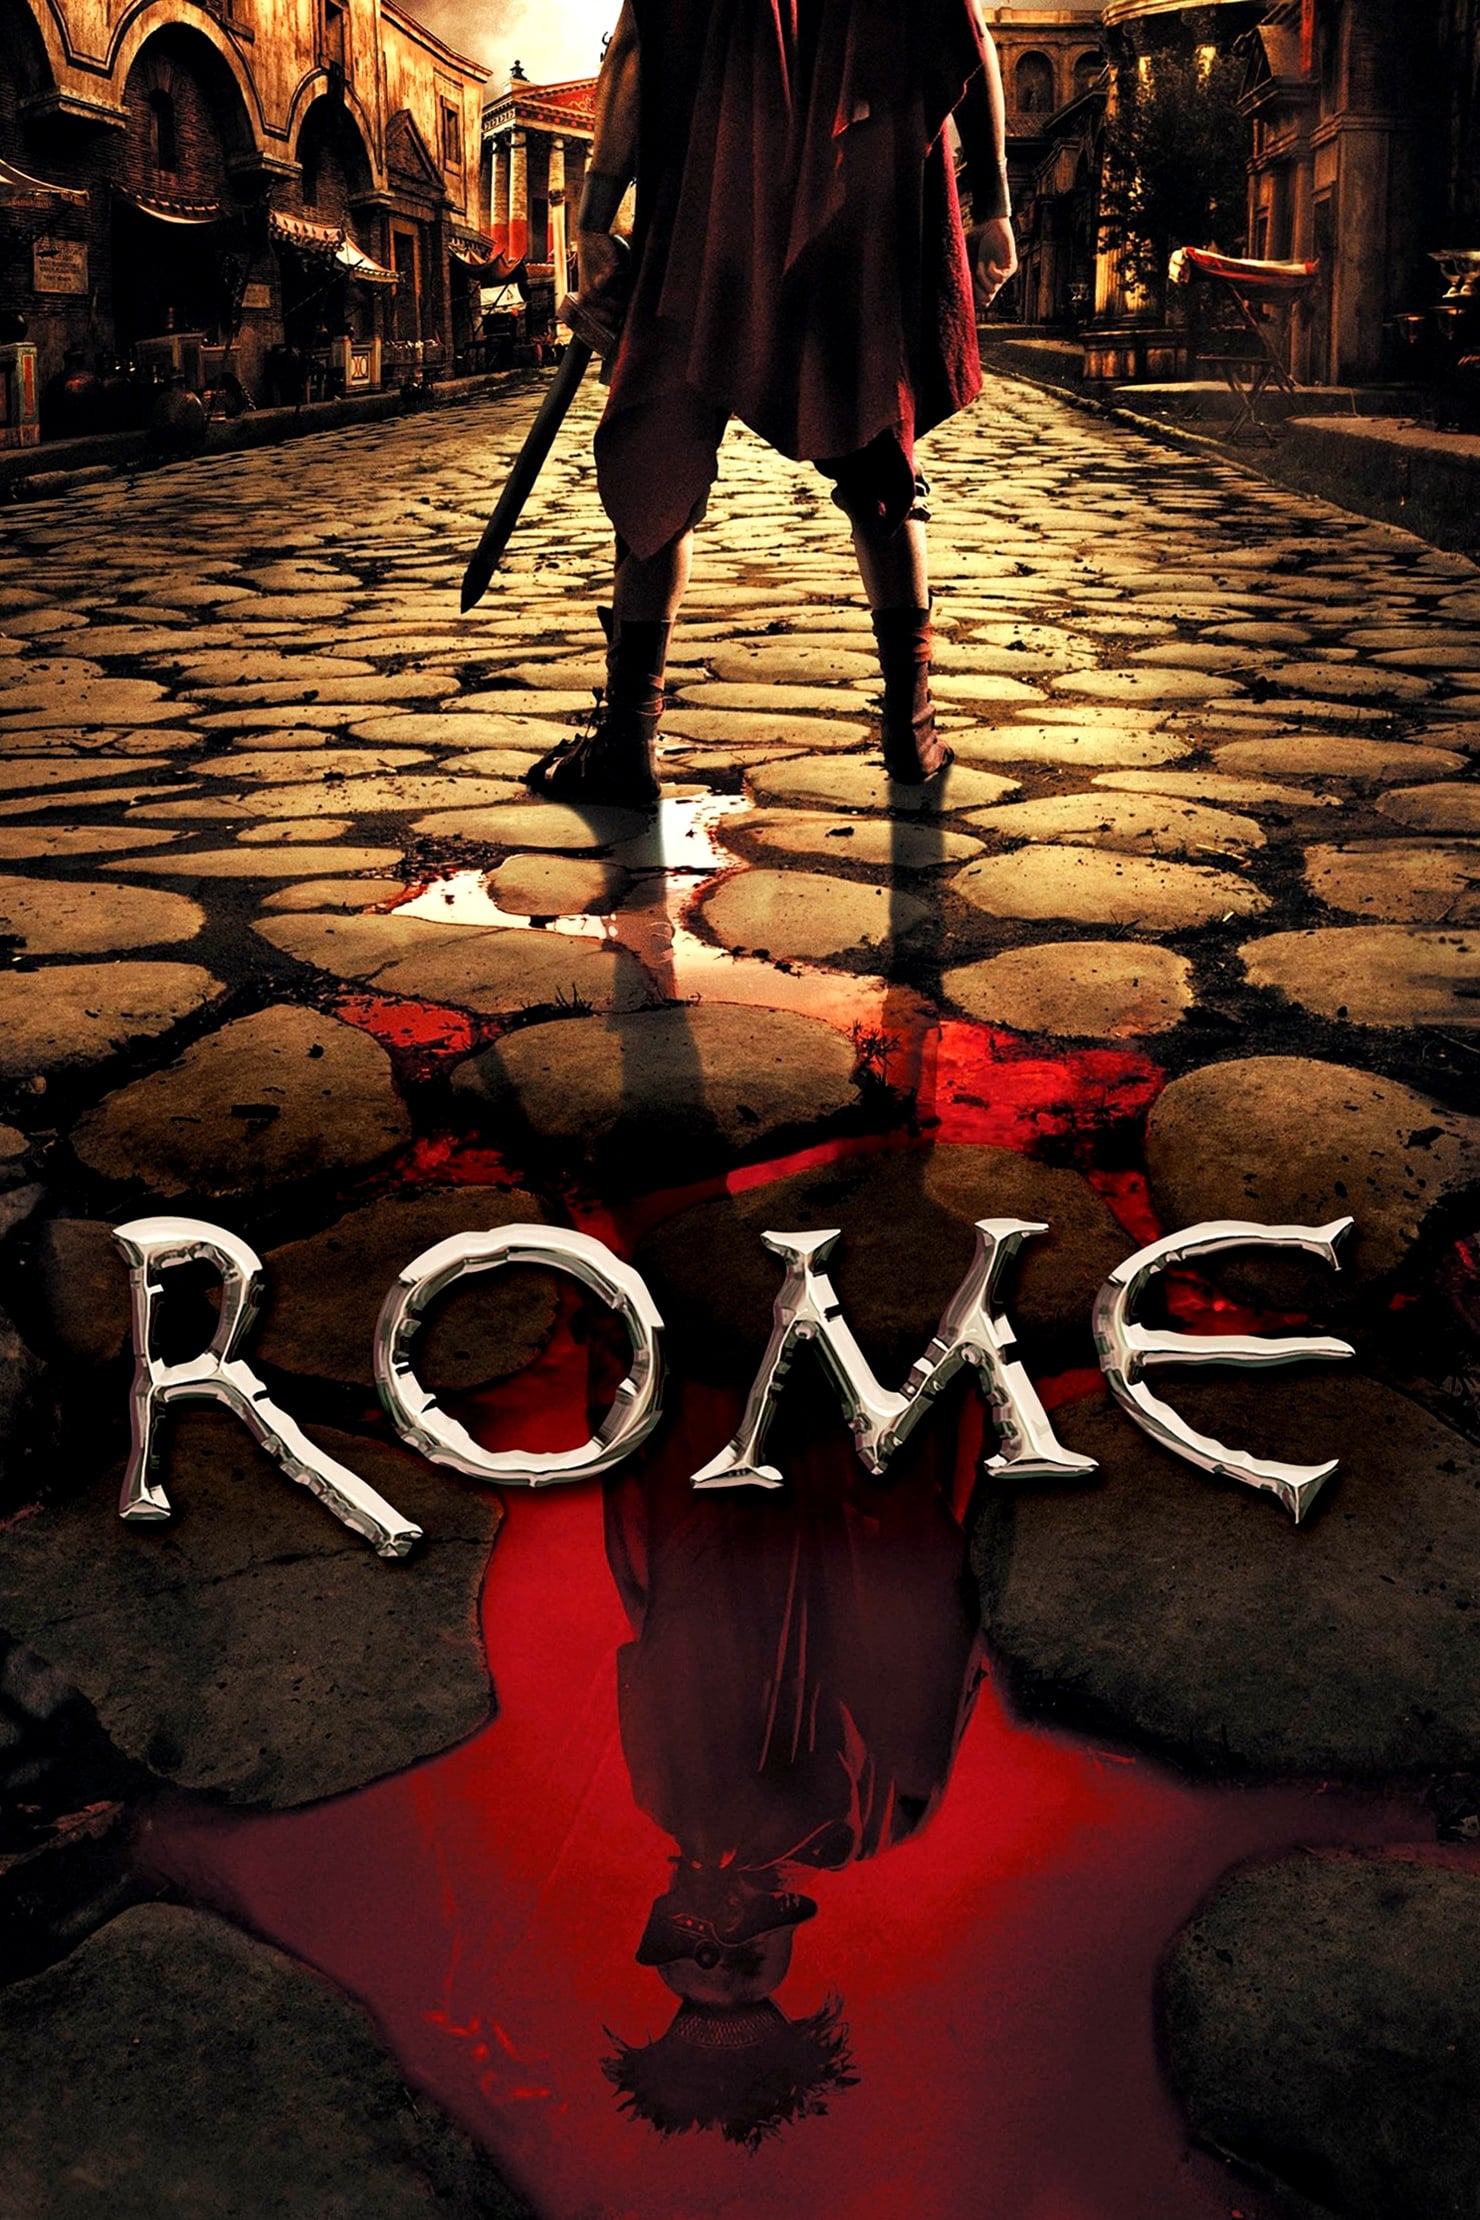 Rome (2005)